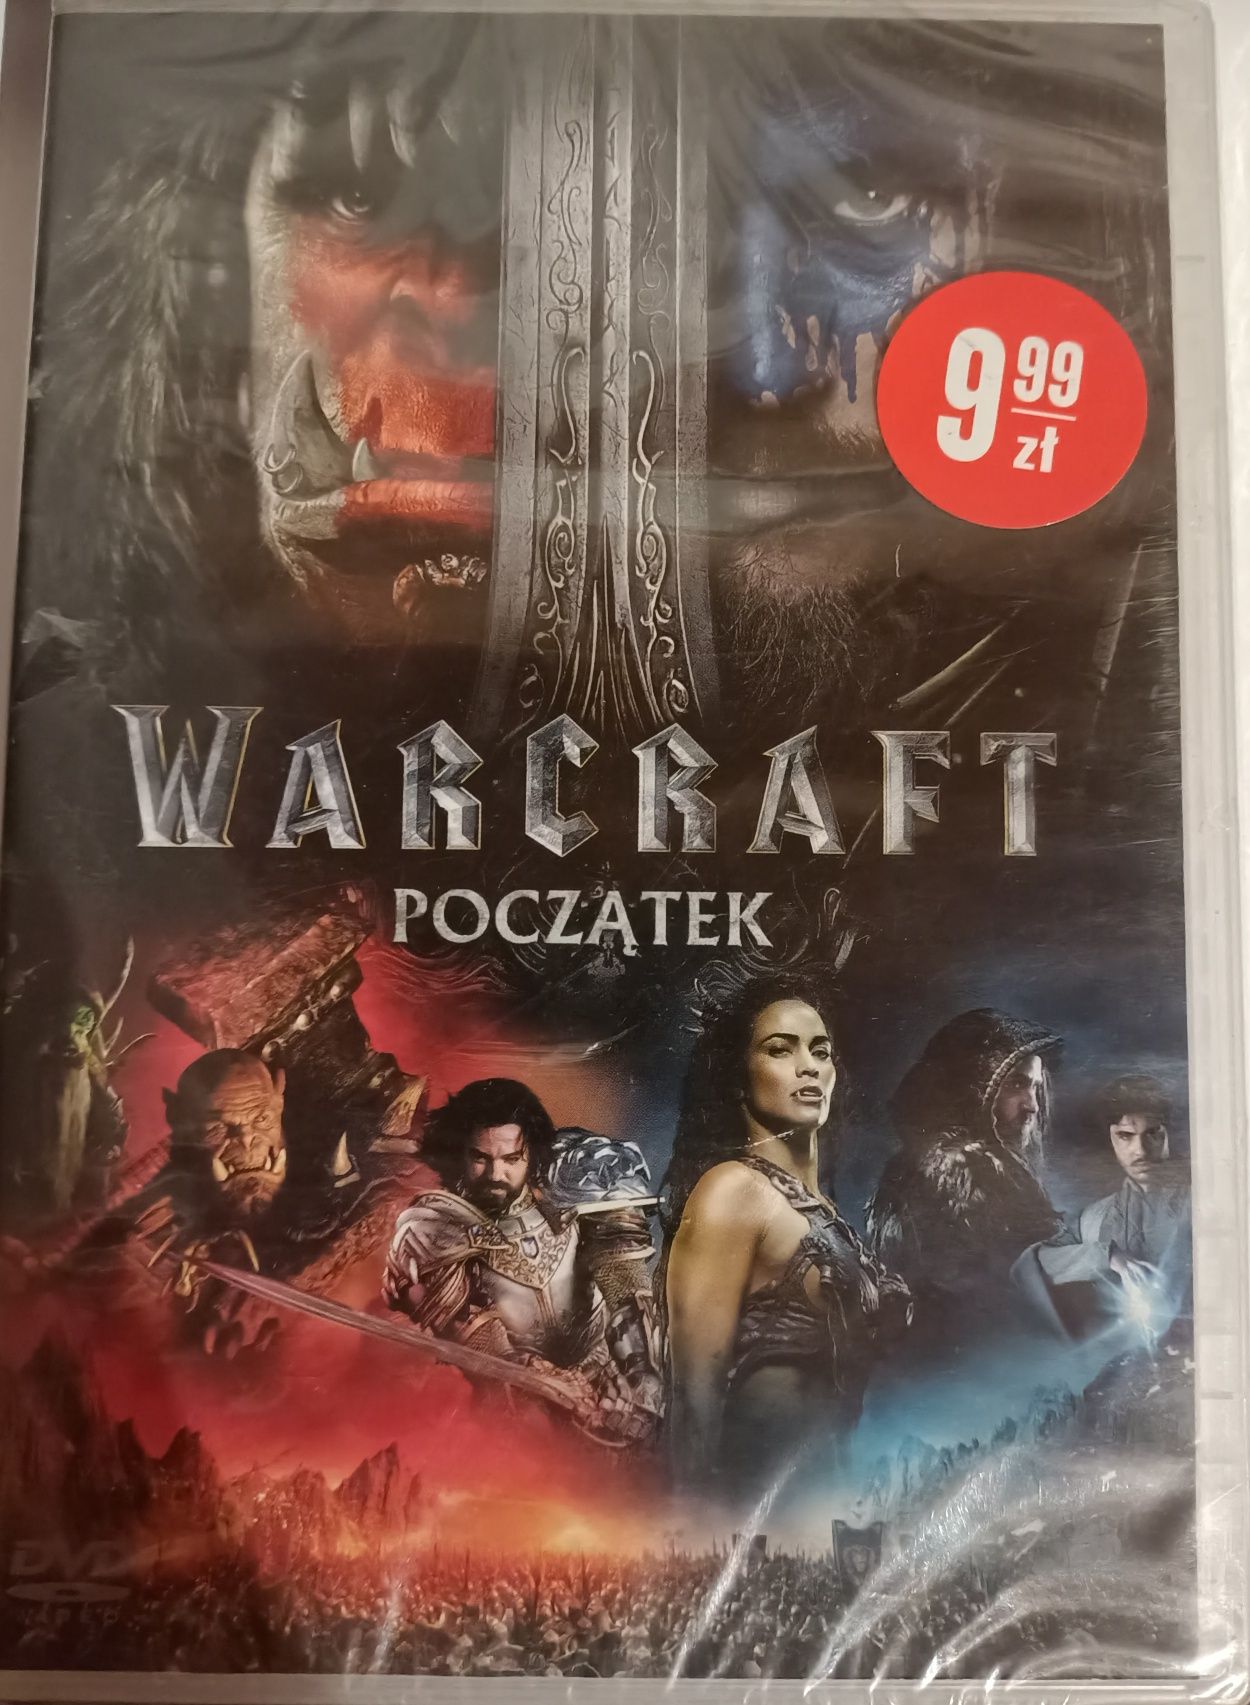 Film Warcraft. Początek płyta DVD